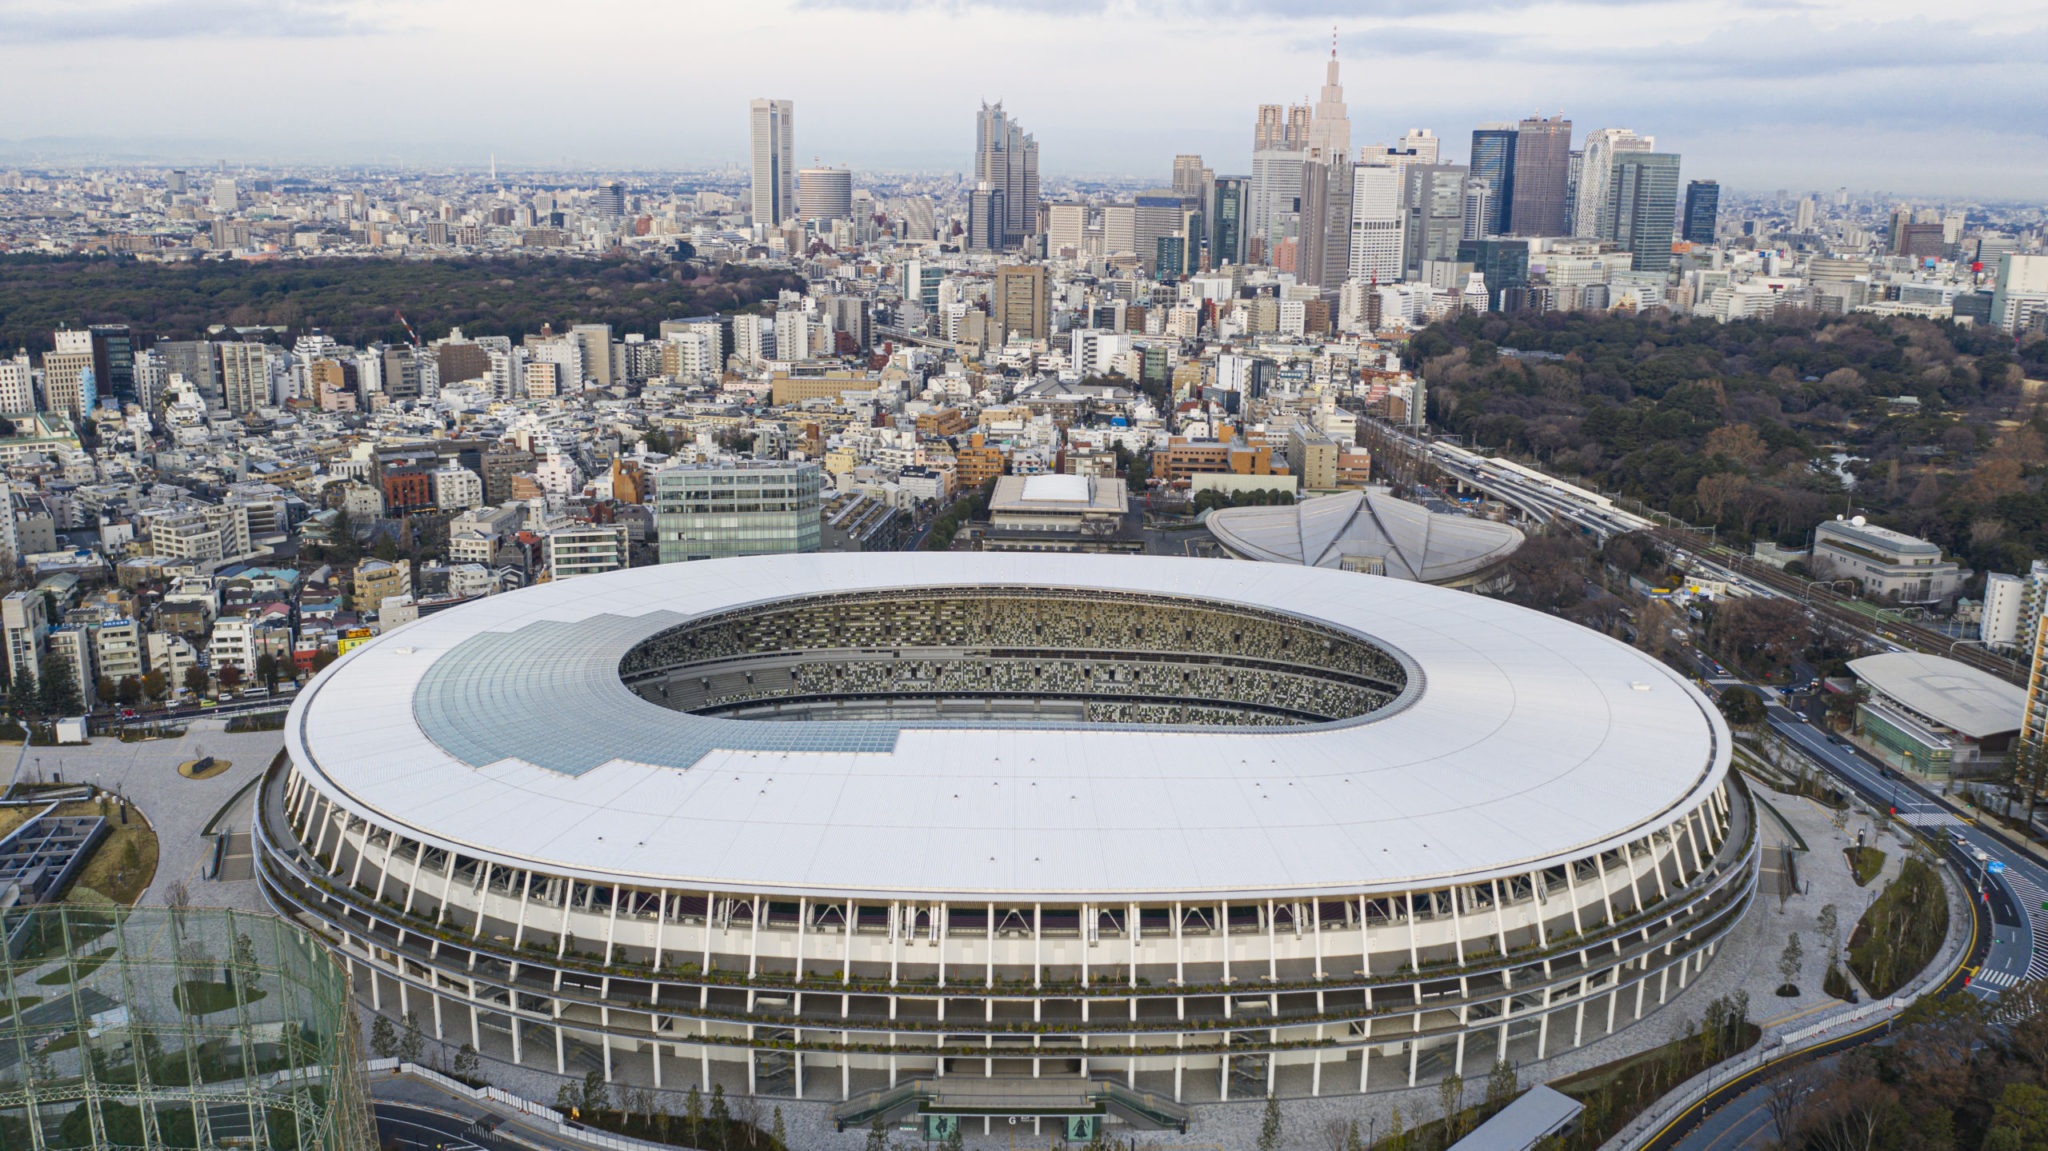 SVĐ Quốc gia Nhật Bản là nơi diễn ra lễ khai mạc và bế mạc Olympic 2020/2021